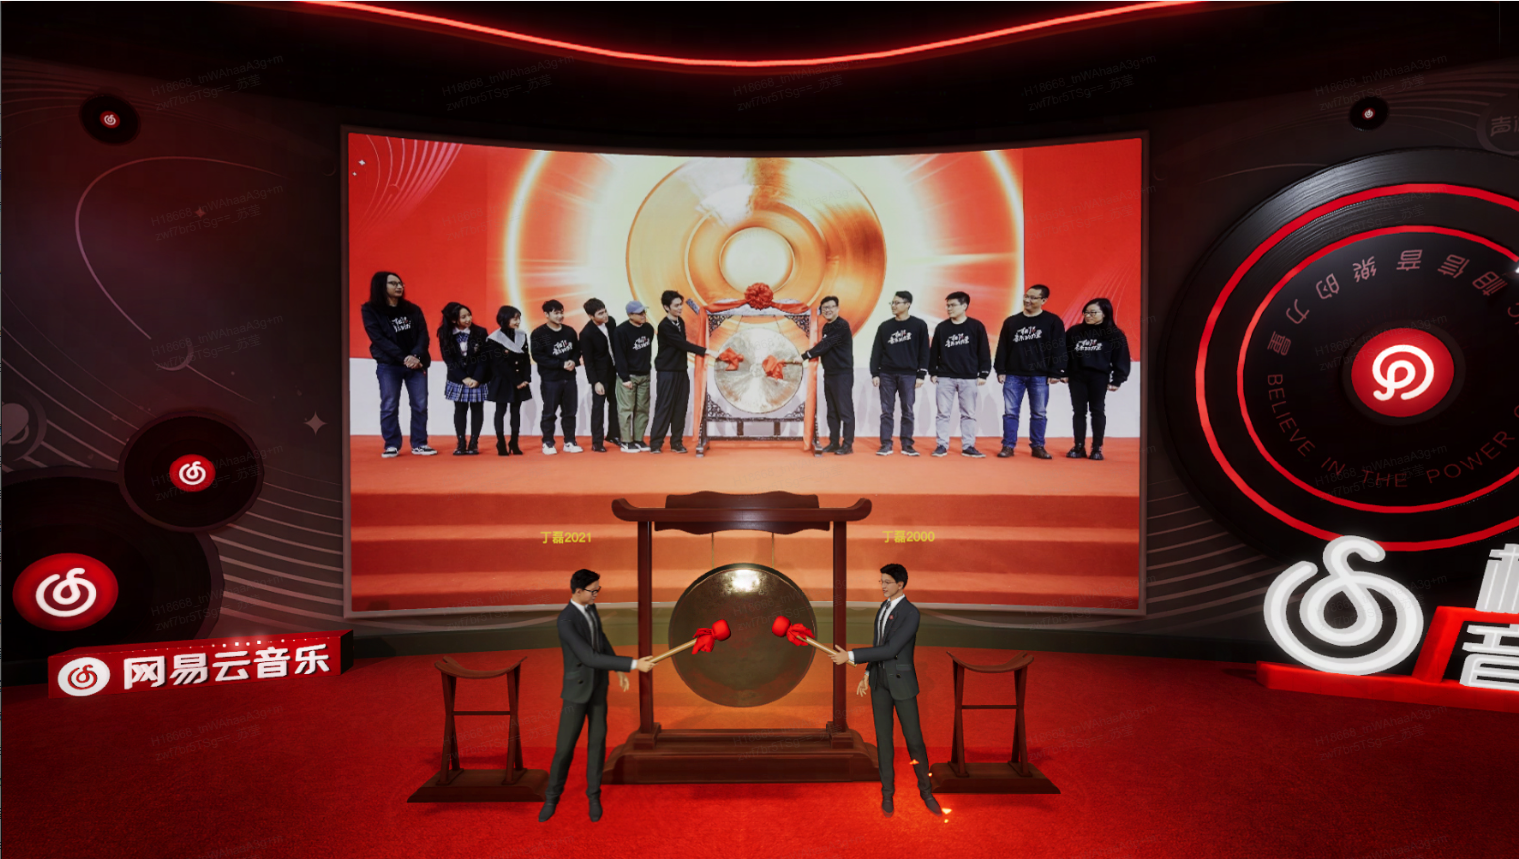 图片展示了两位男士站在大屏幕前，屏幕上显示着一组穿着统一服装的人员和中央的标志性图案，周围有红色和黑色的装饰元素。